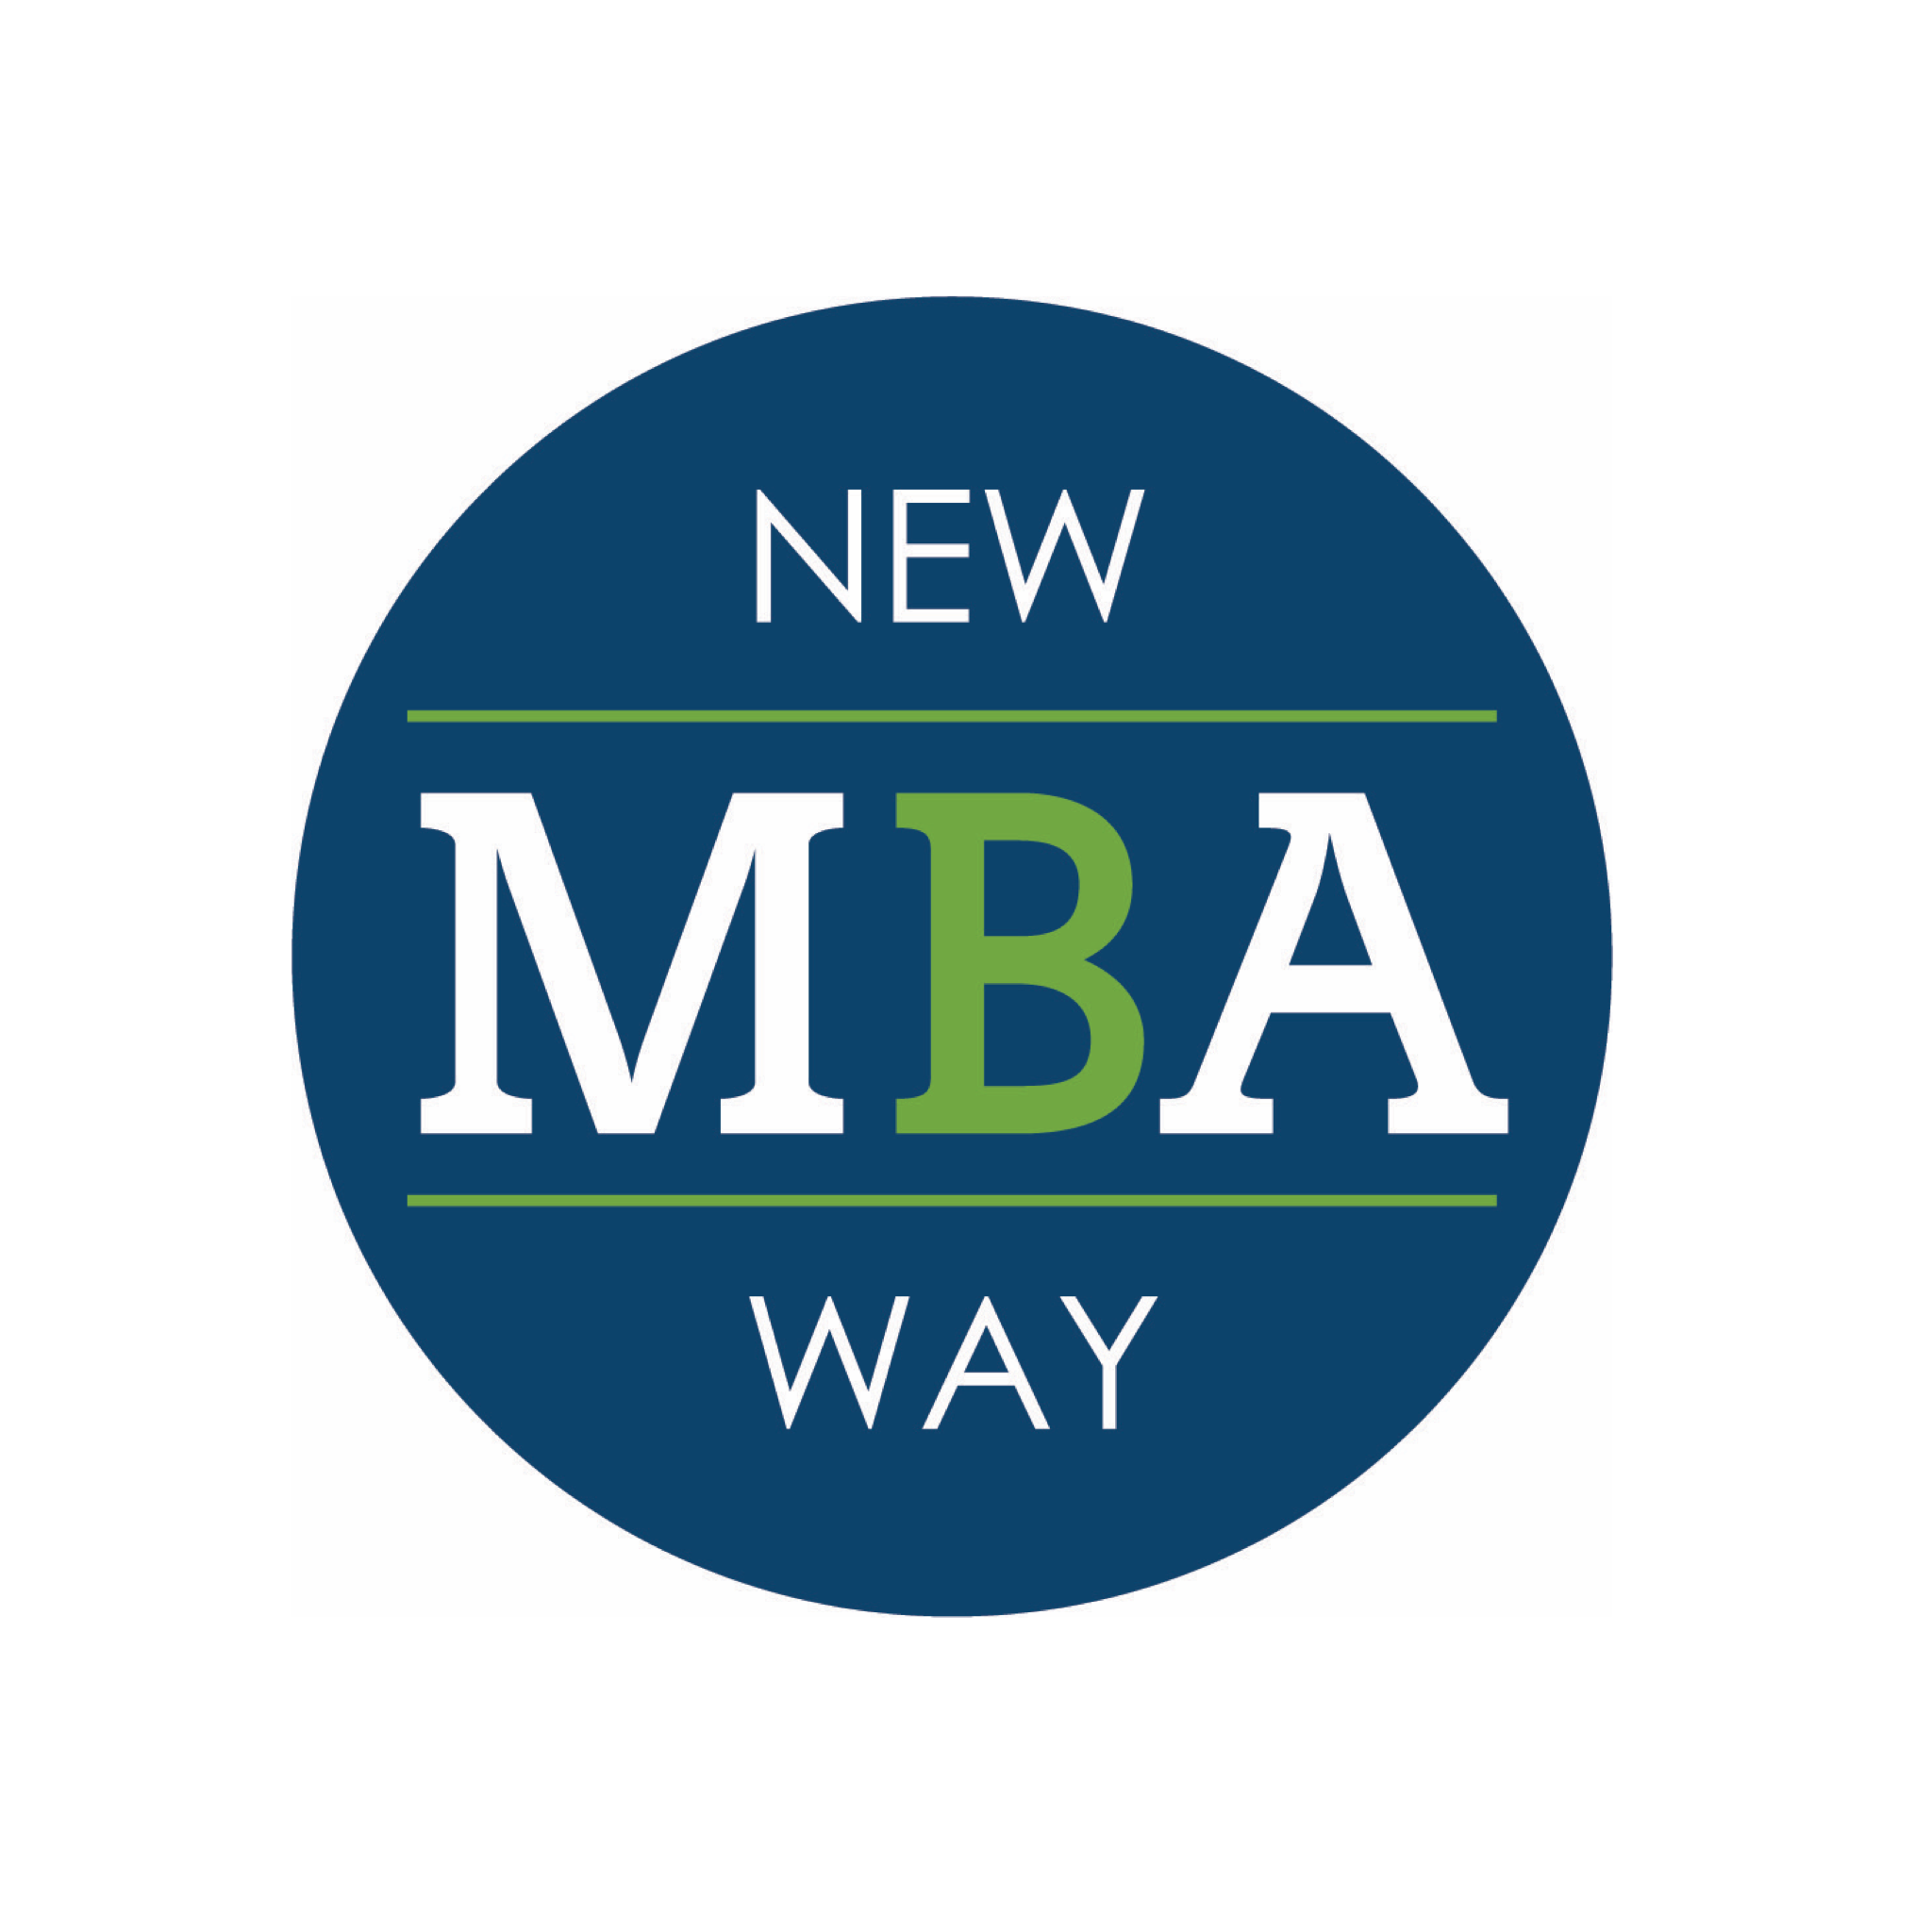 Bonvera Commences New Education Program Called New Way MBA